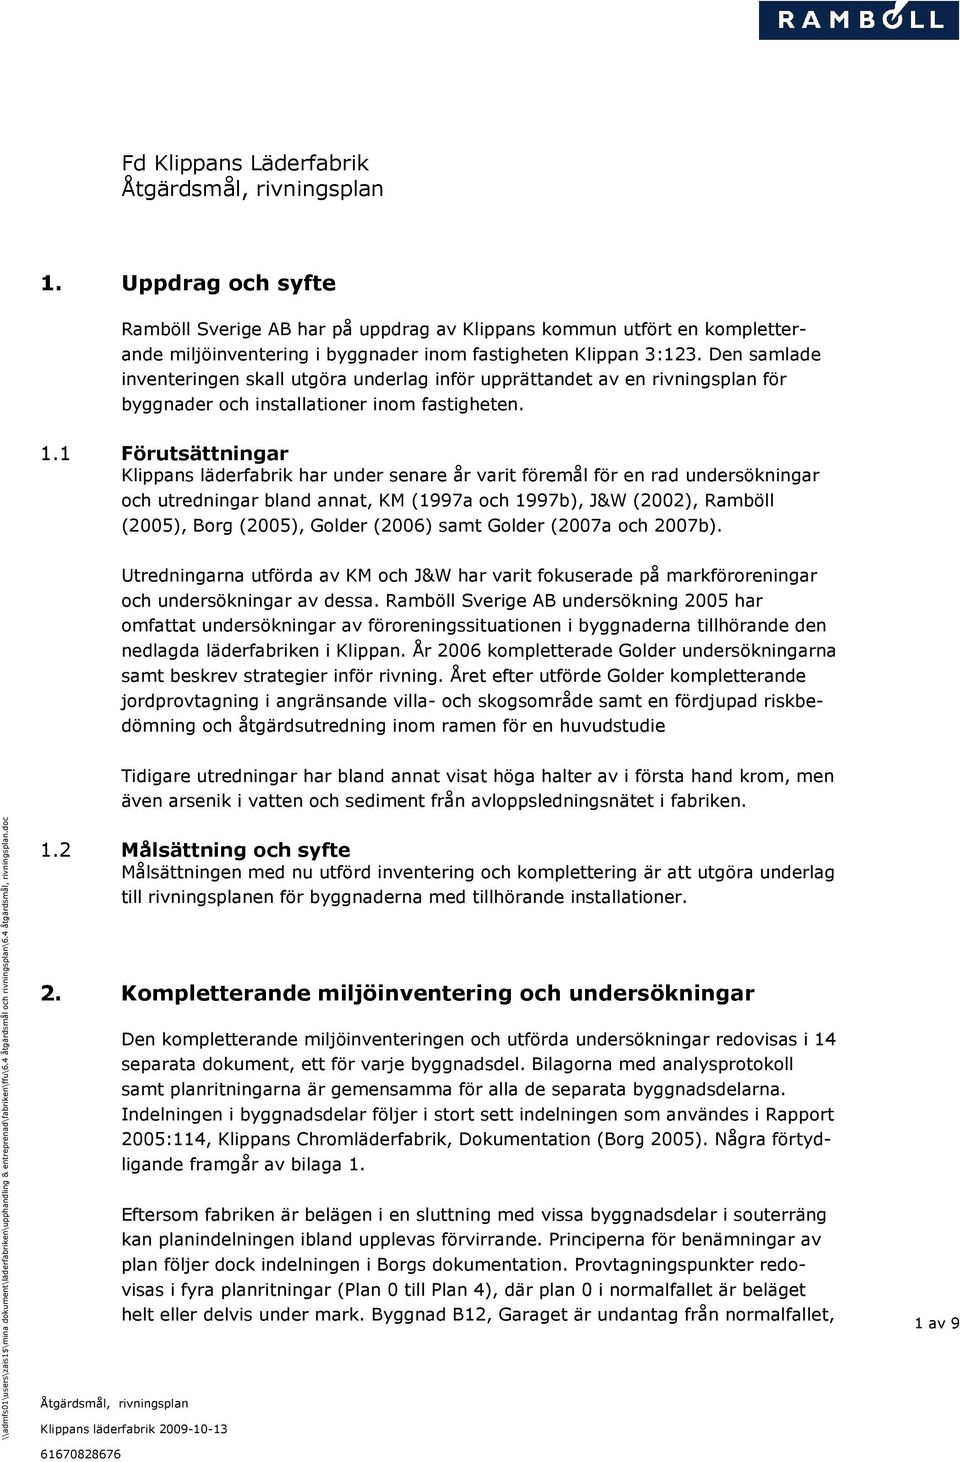 1 Förutsättningar Klippans läderfabrik har under senare år varit föremål för en rad undersökningar och utredningar bland annat, KM (1997a och 1997b), J&W (2002), Ramböll (2005), Borg (2005), Golder